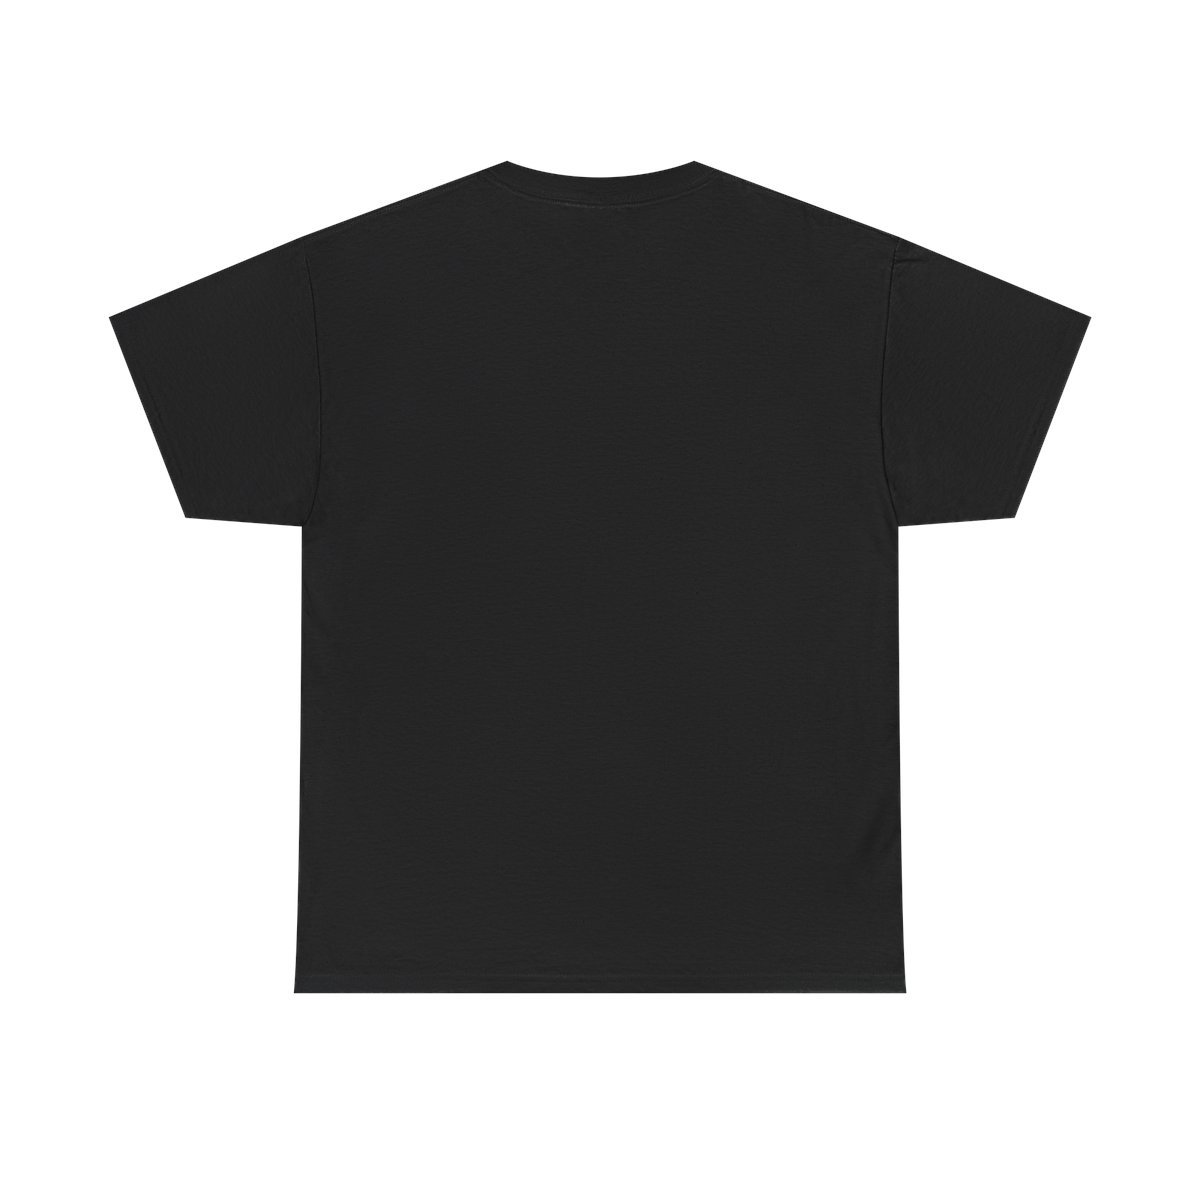 Core Fire – Ascent Short Sleeve T-Shirt